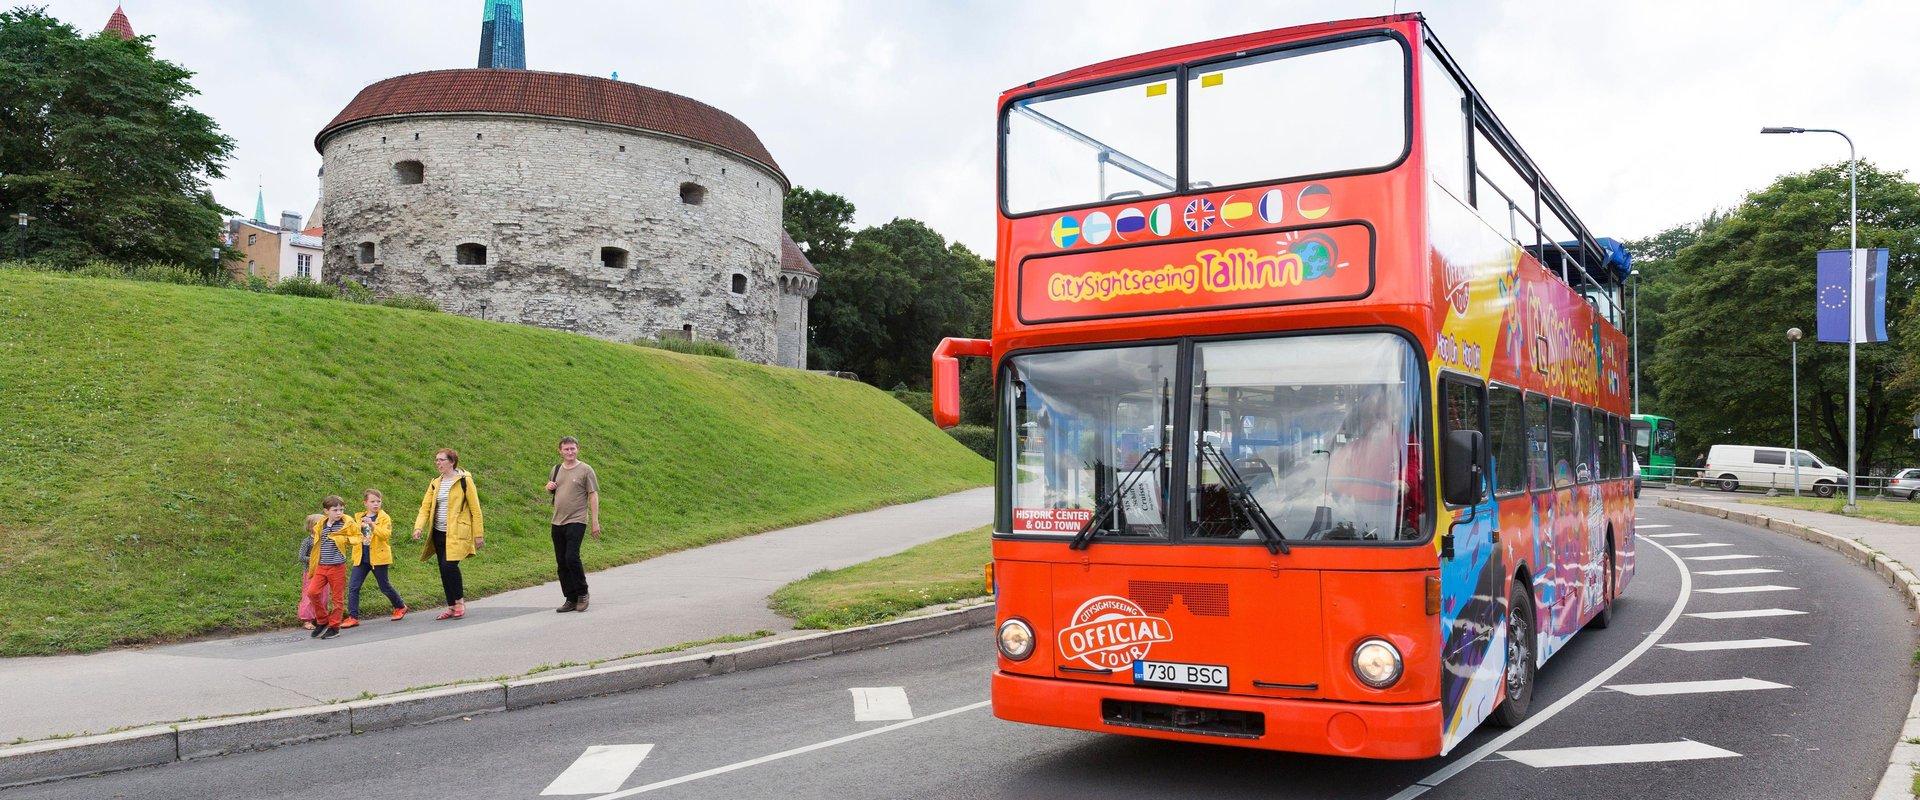 CitySightseeing Tallinn Hop on Hop off